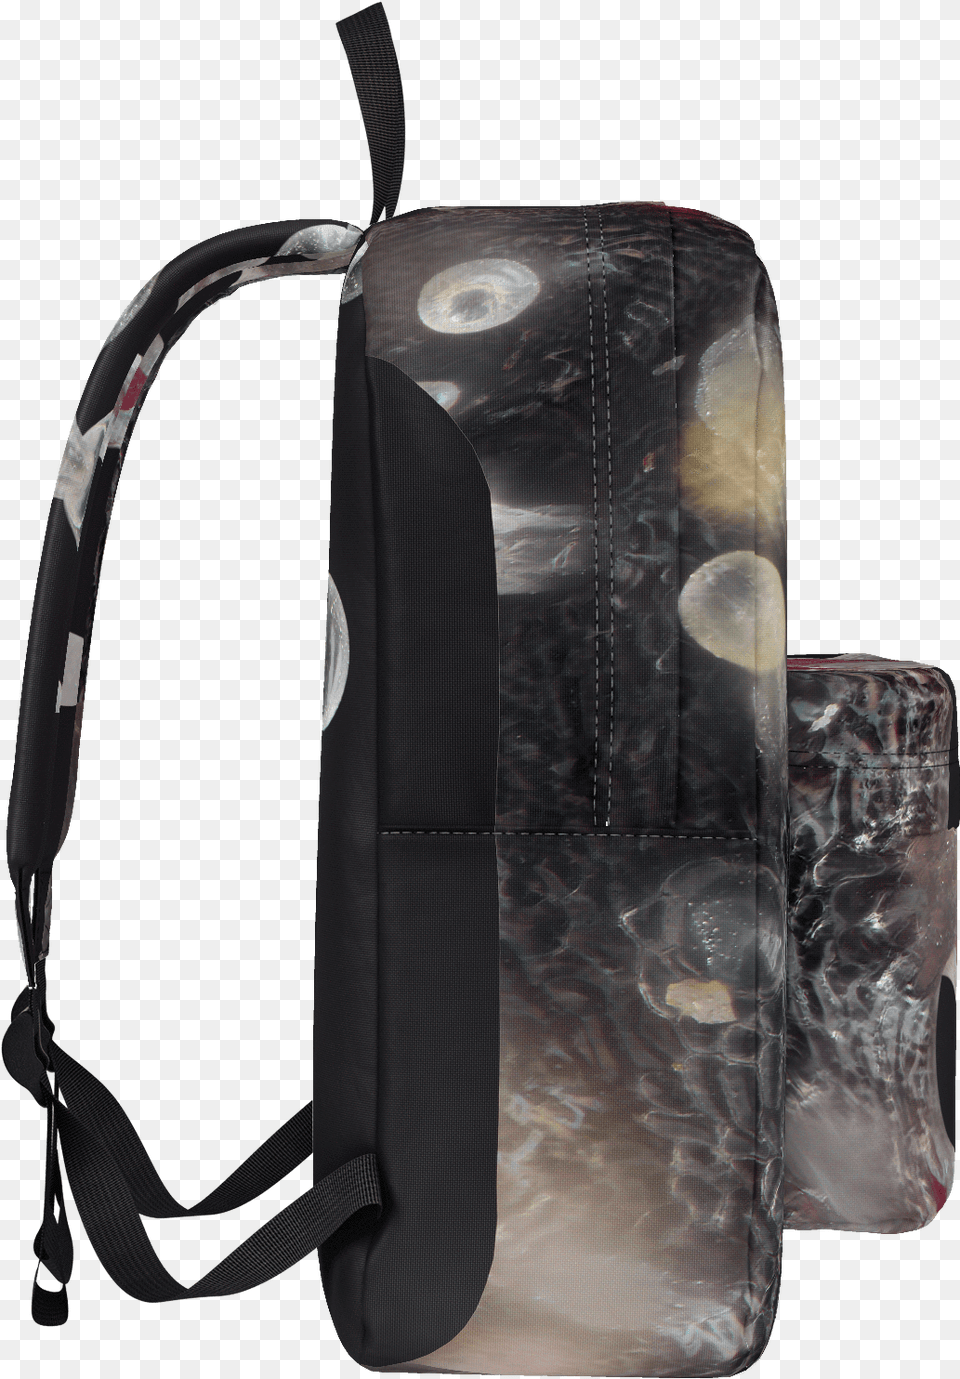 Goyard Trichrome Backpack Bag Backpack, Accessories, Handbag Free Transparent Png